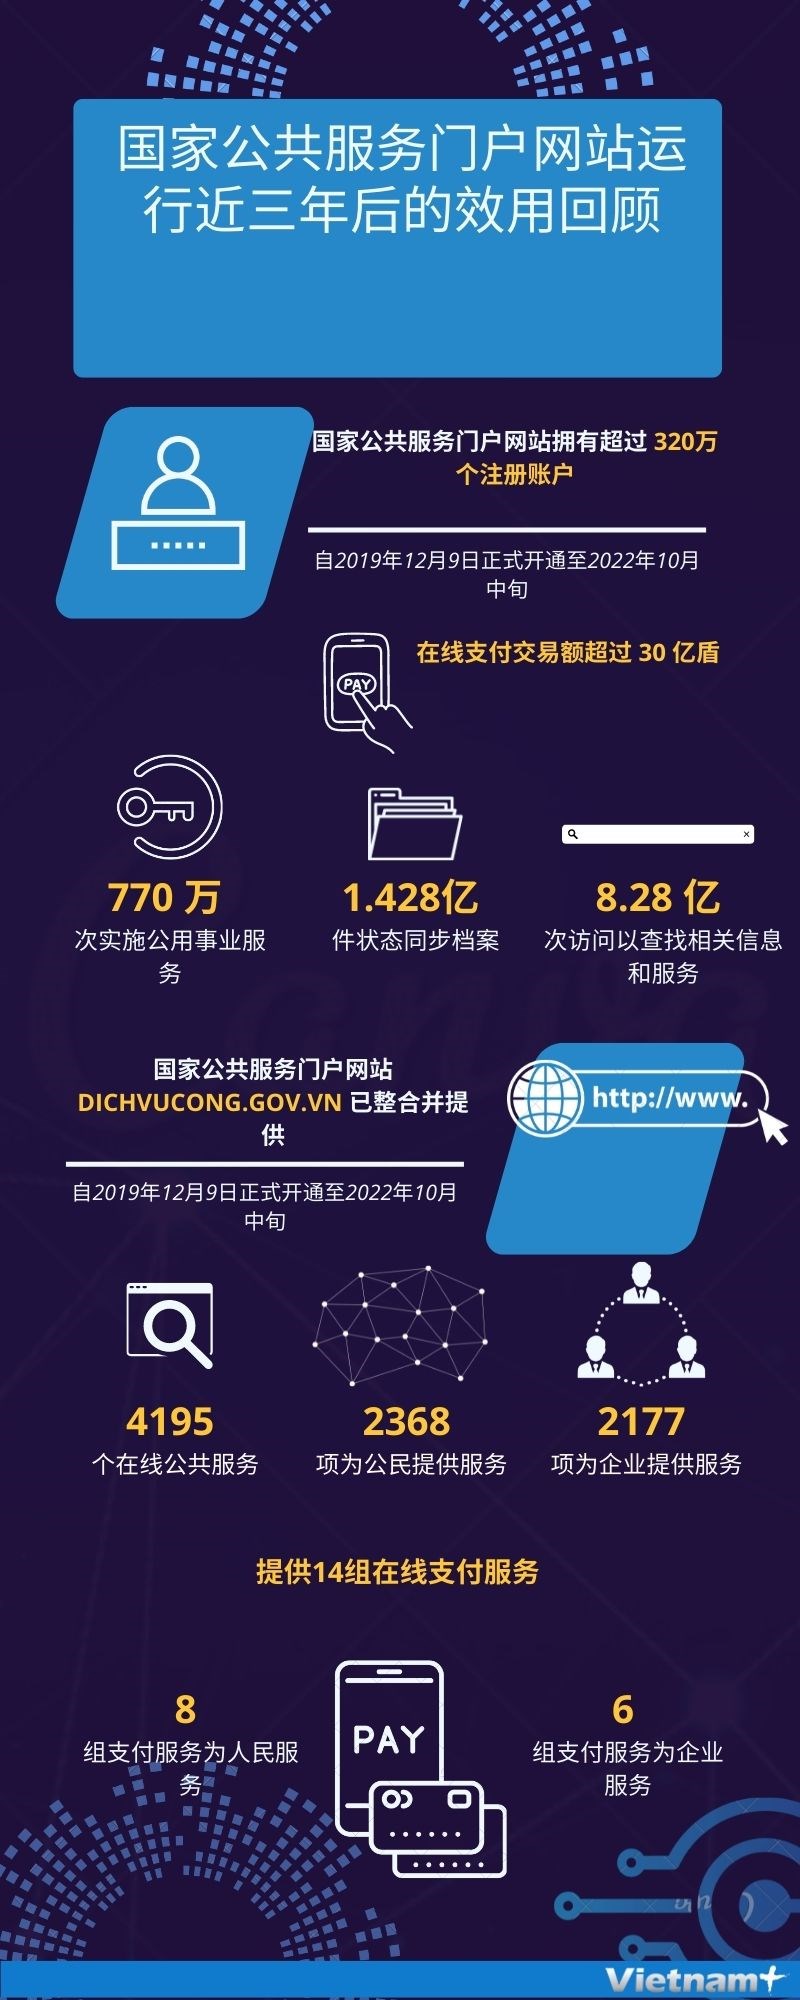 图表新闻：国家公共服务门户网站运行近三年后的效用回顾 hinh anh 1